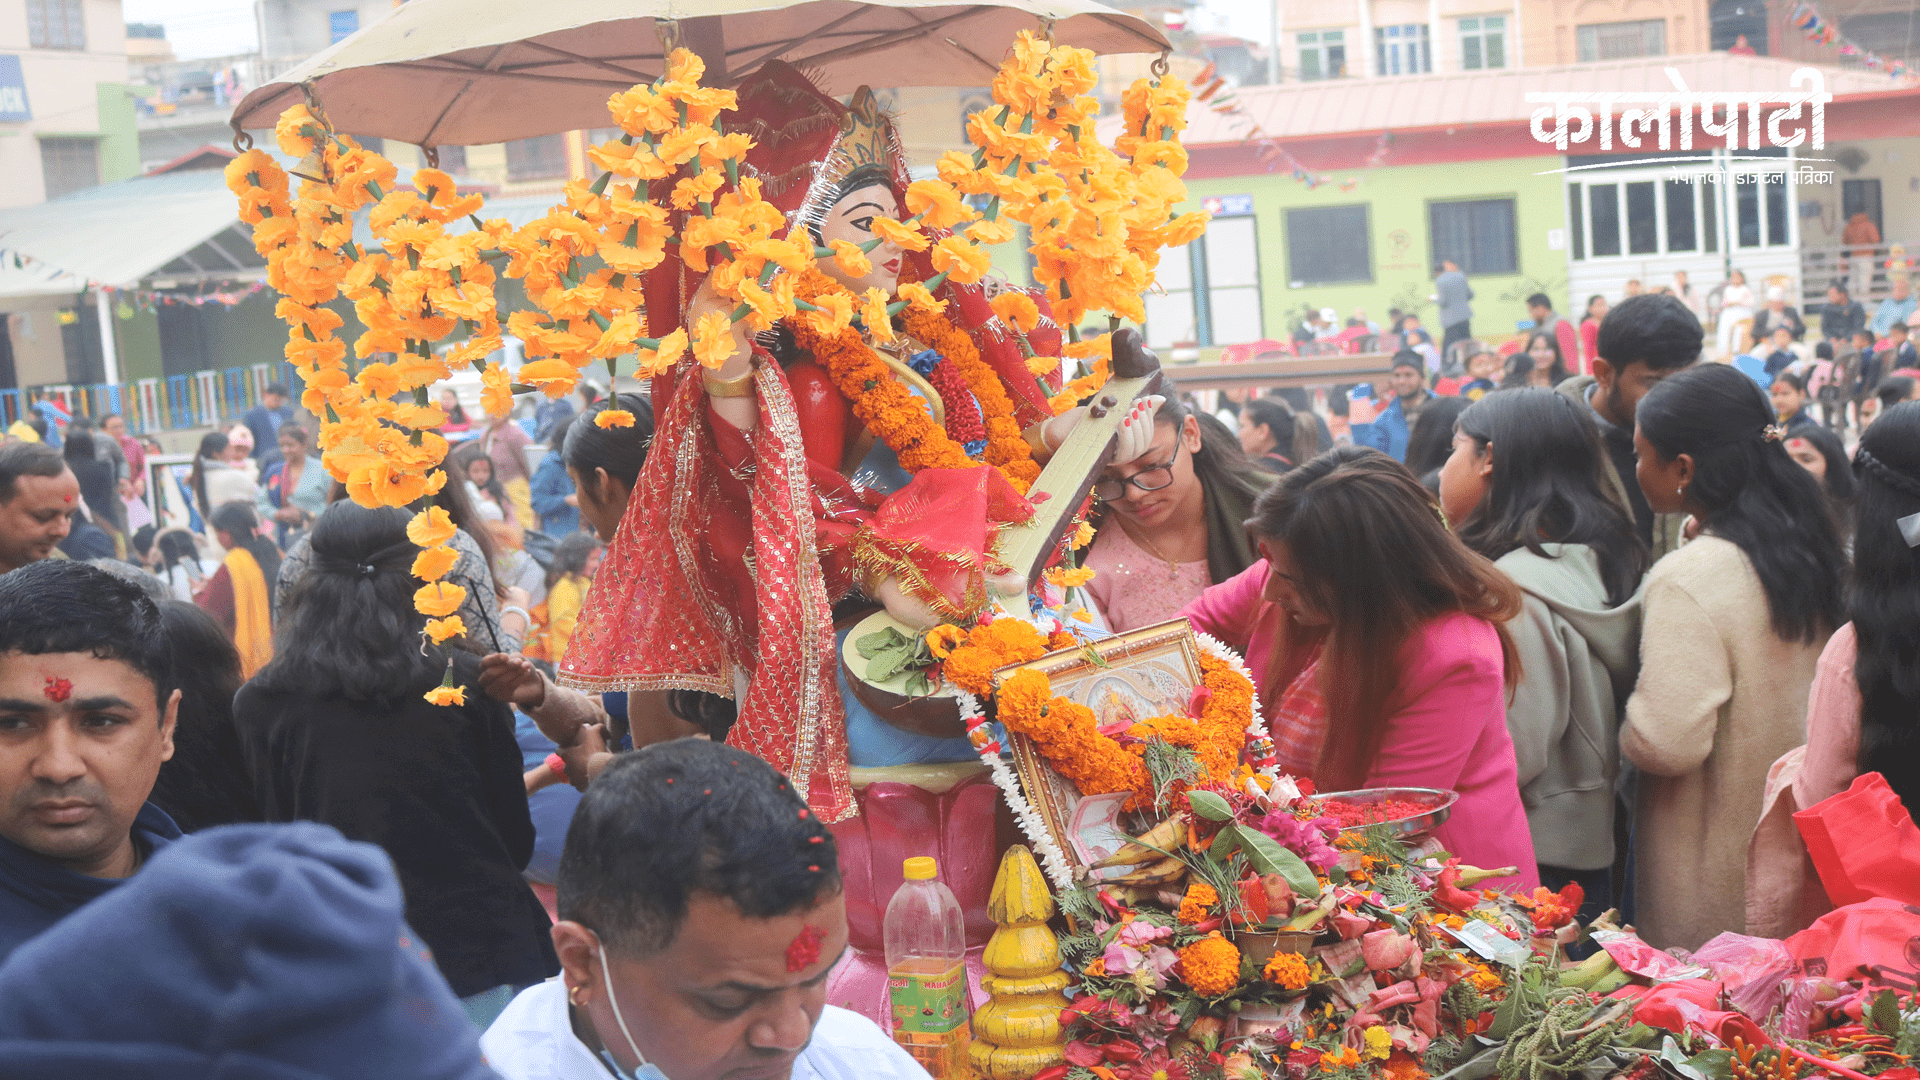 विद्याकी देवी सरस्वतीको पूजा आरधाना गरी मनाइदै..(फोटो-फिचर)